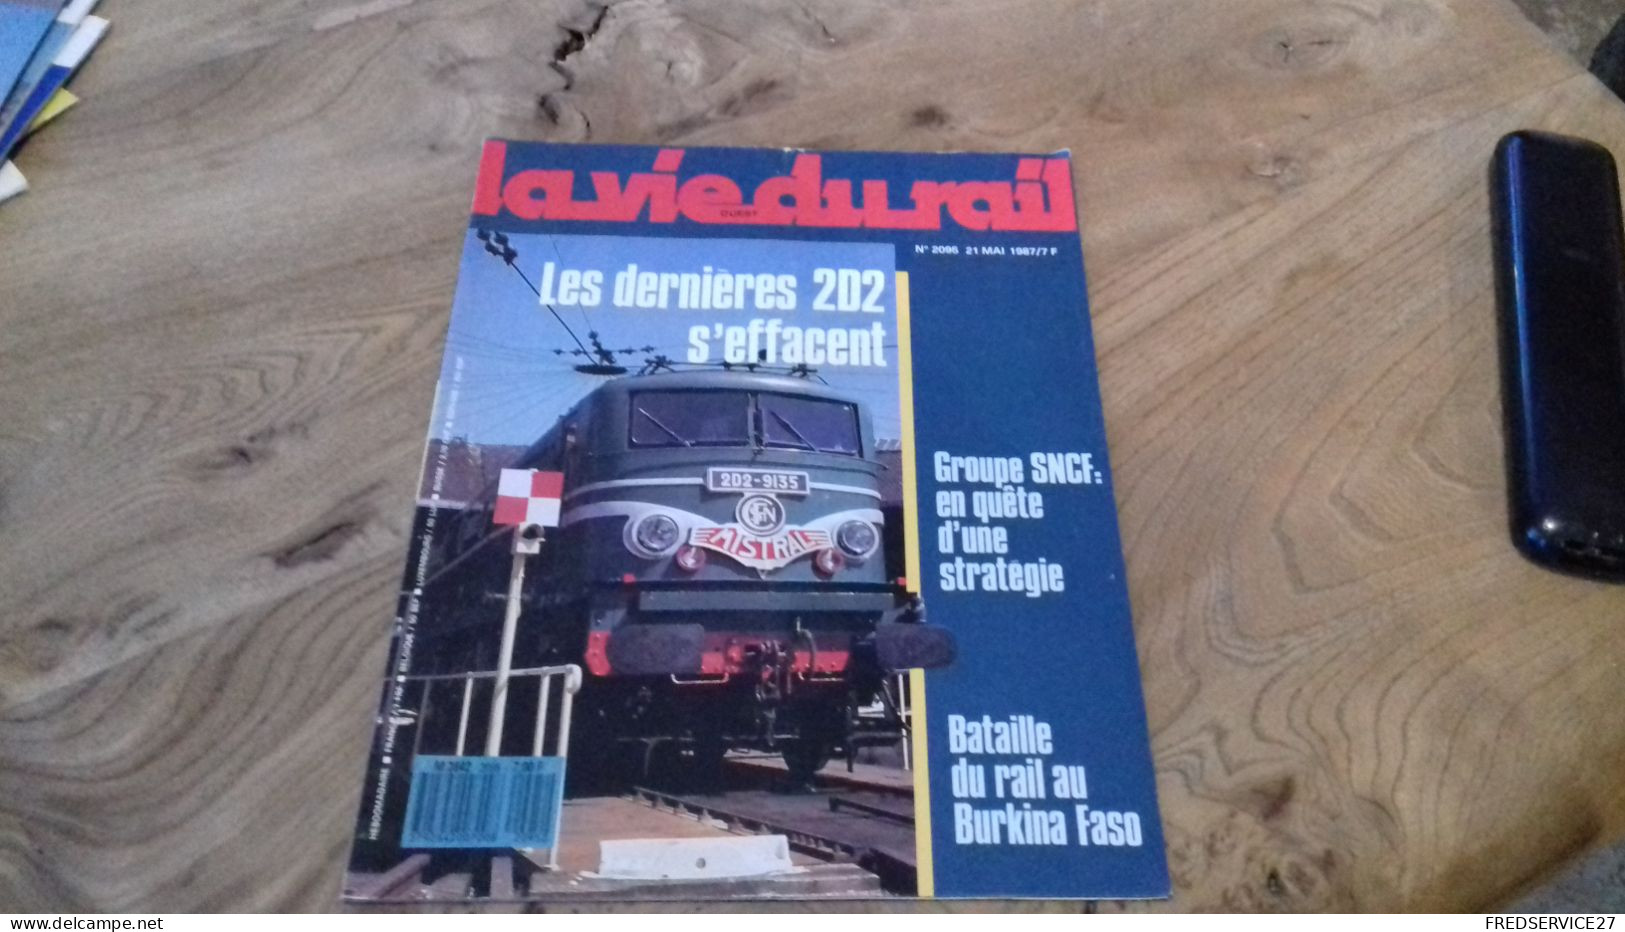 155/ LA VIE DU RAIL N° 2095  / JUIN 1987 / LES DERNIERES 2D2 S EFFACENT / GROUPE SNCF EN QUETE D UNE STRATEGIE - Treinen